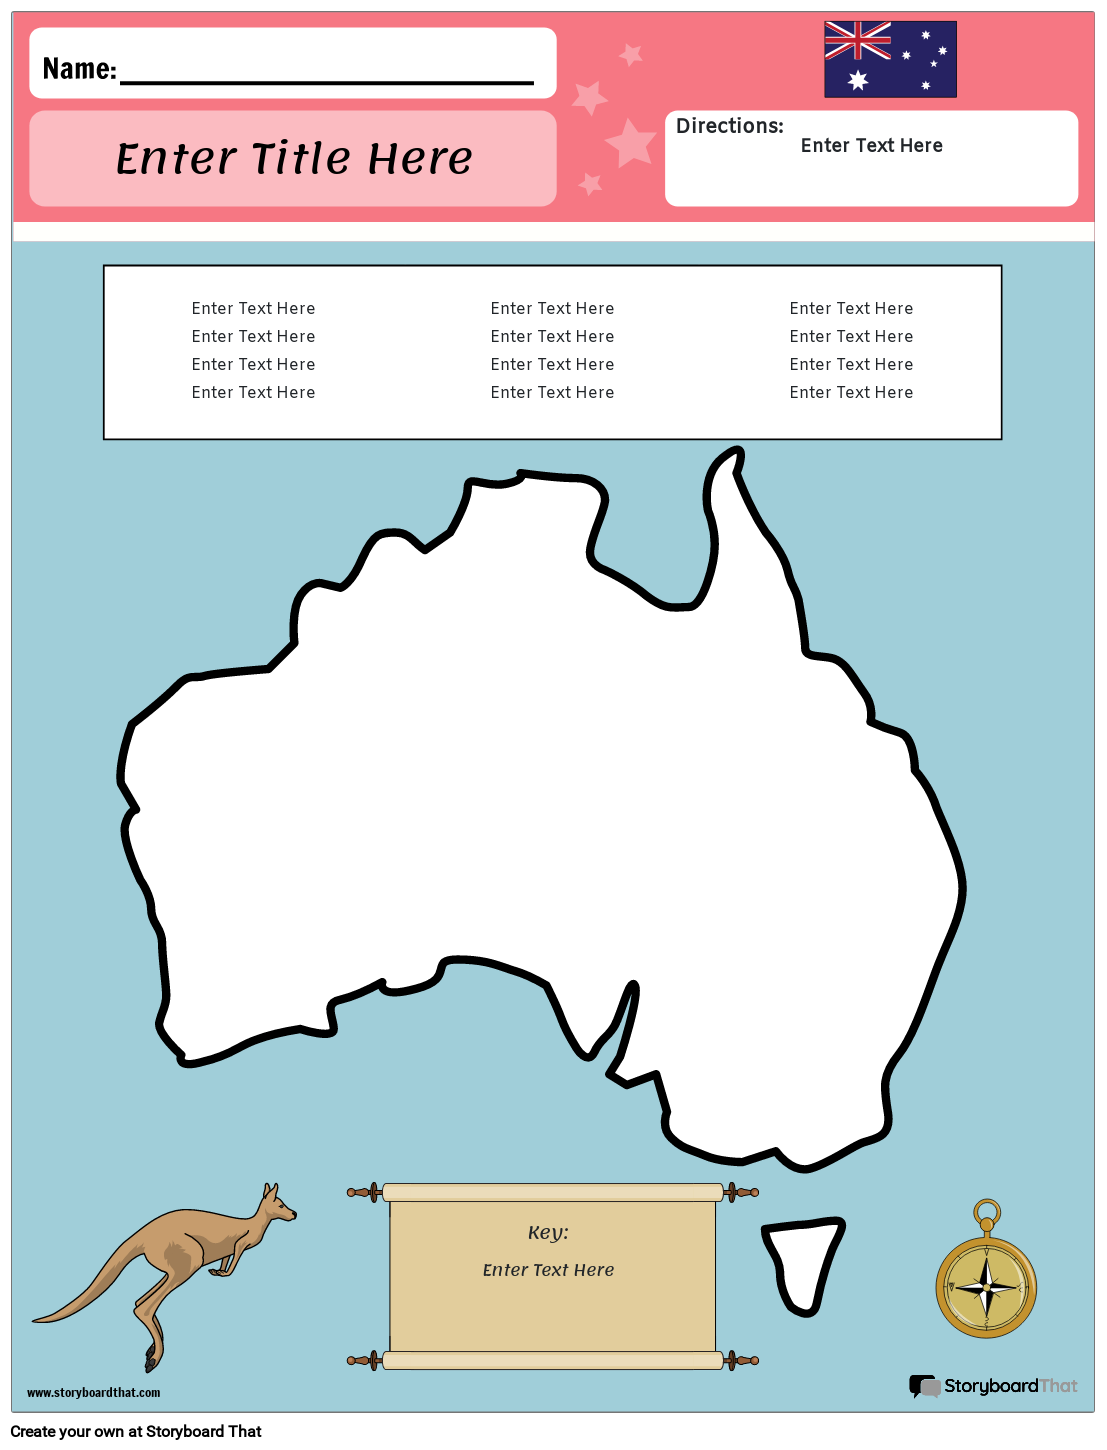 ऑस्ट्रेलिया का नक्शा